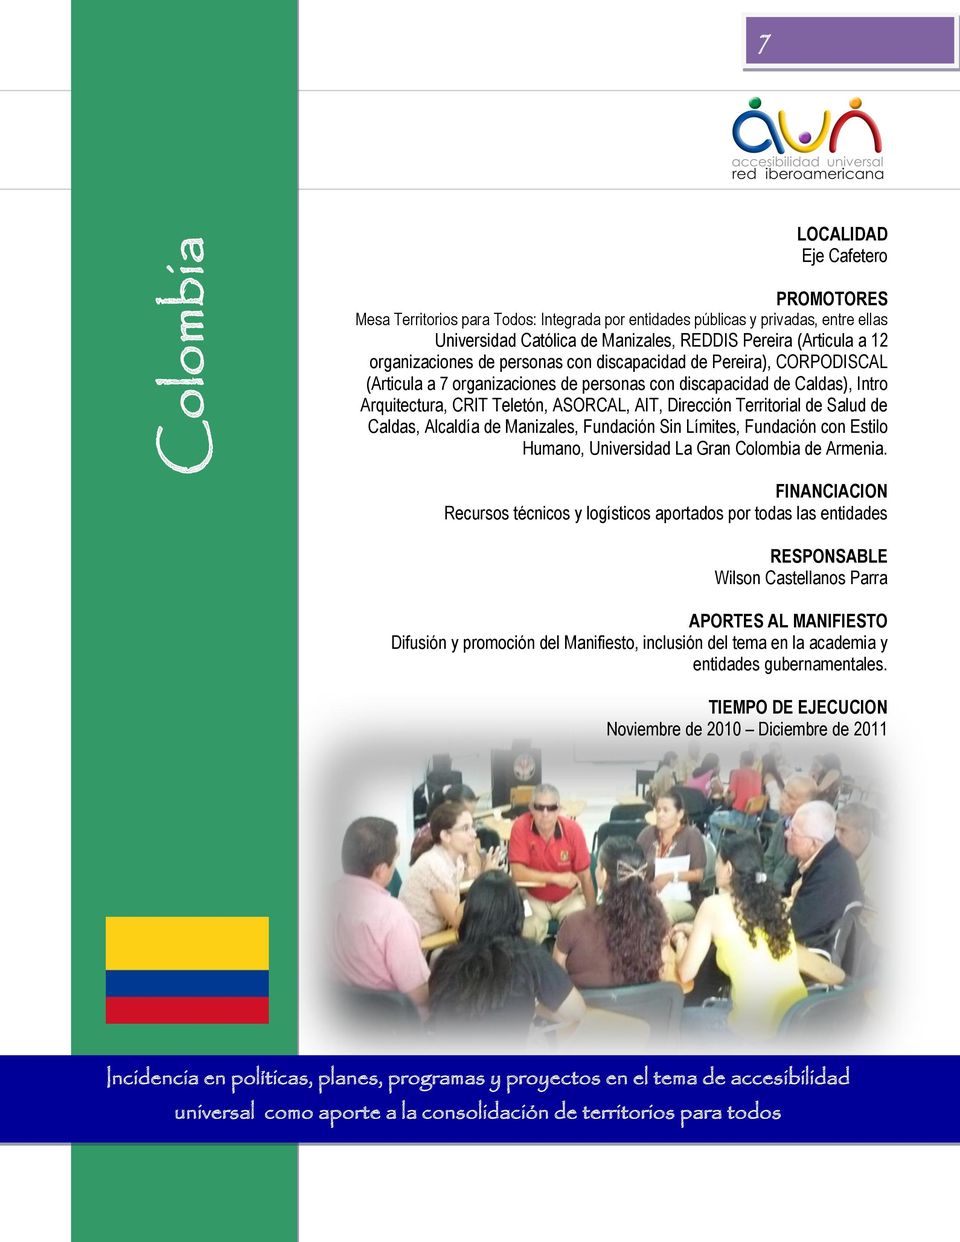 Territorial de Salud de Caldas, Alcaldía de Manizales, Fundación Sin Límites, Fundación con Estilo Humano, Universidad La Gran Colombia de Armenia.